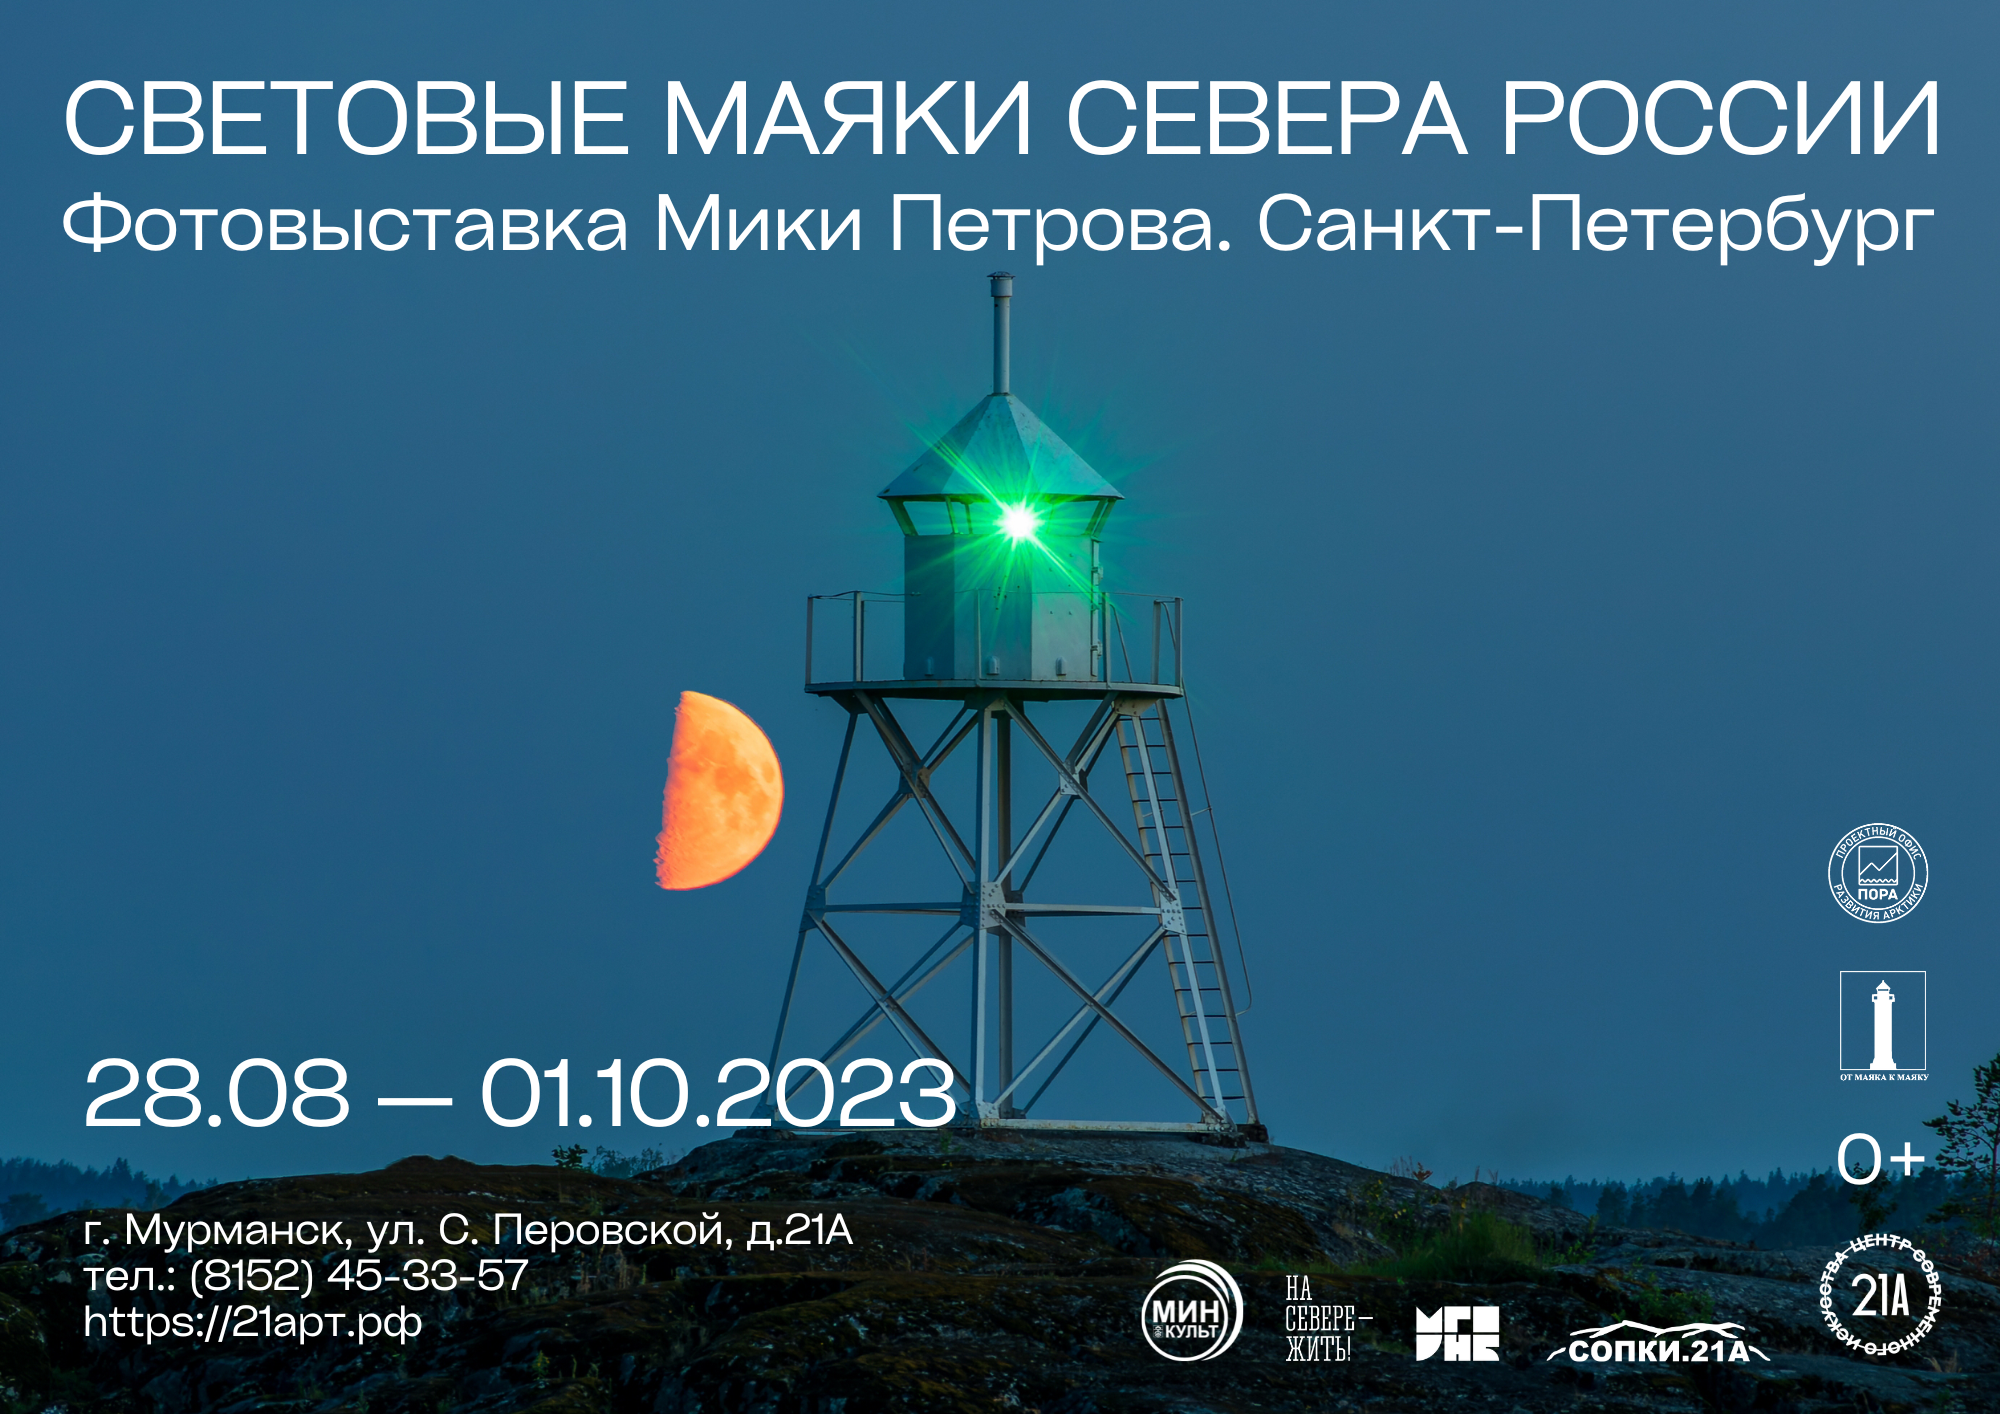 В Мурманске откроется фотовыставка Мики Петрова «Световые маяки Севера
России»